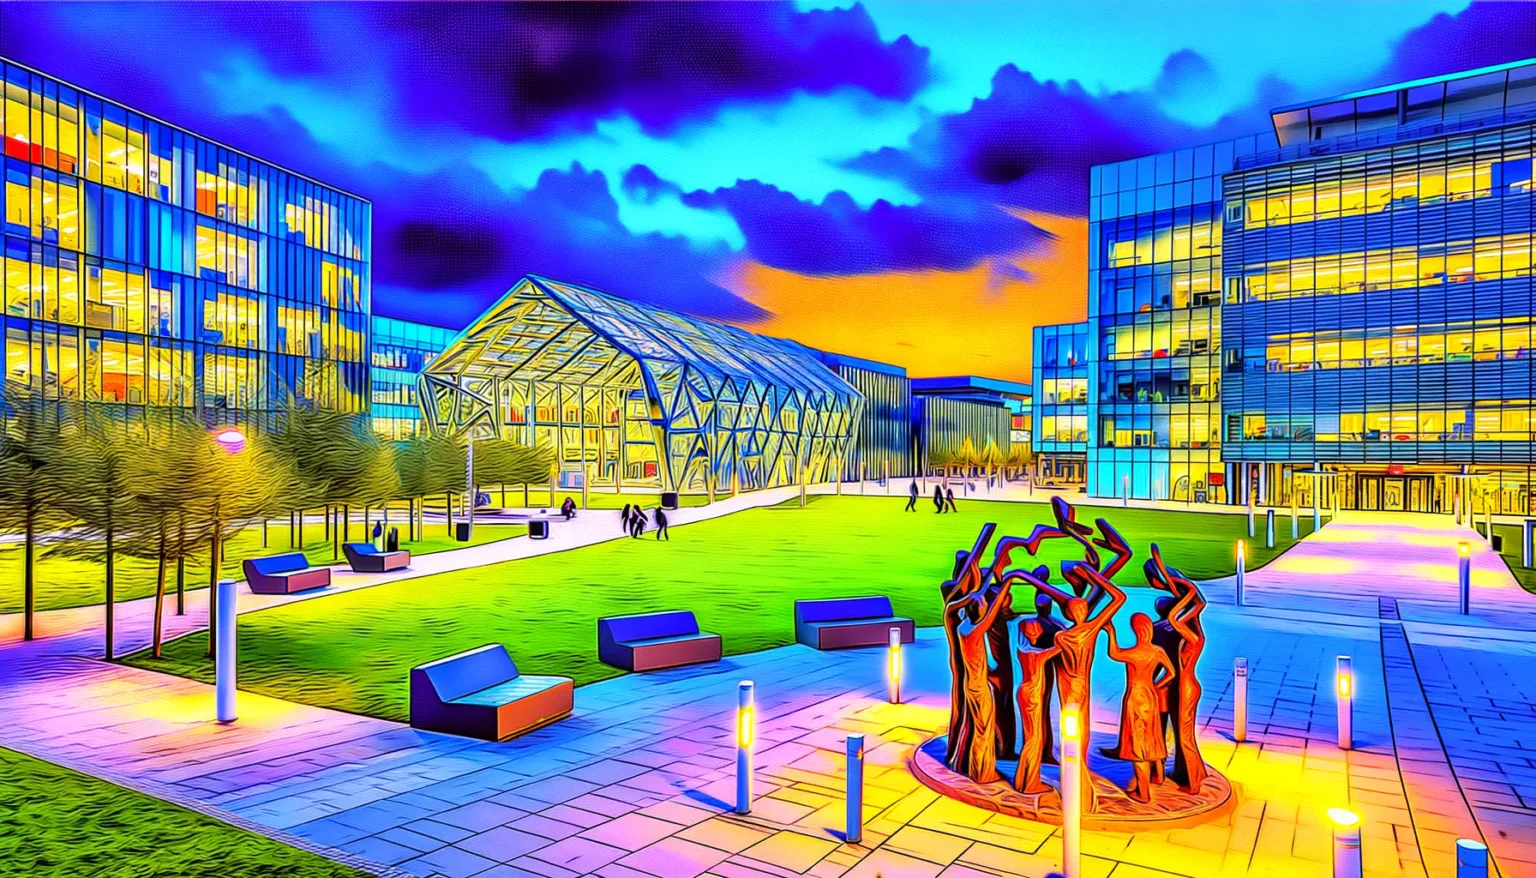 Bild eines modernen Campusgeländes mit bunten, hochmodernen Gebäuden in einem stilisierten, neonfarbenen Filter, der die Szene wie eine Illustration erscheinen lässt. Im Vordergrund ist eine auffällige Skulptur von Figuren zu sehen, umgeben von Leuchten, Bäumen und Sitzgelegenheiten. Der Himmel ist dramatisch mit lila und blauen Wolken gestaltet.